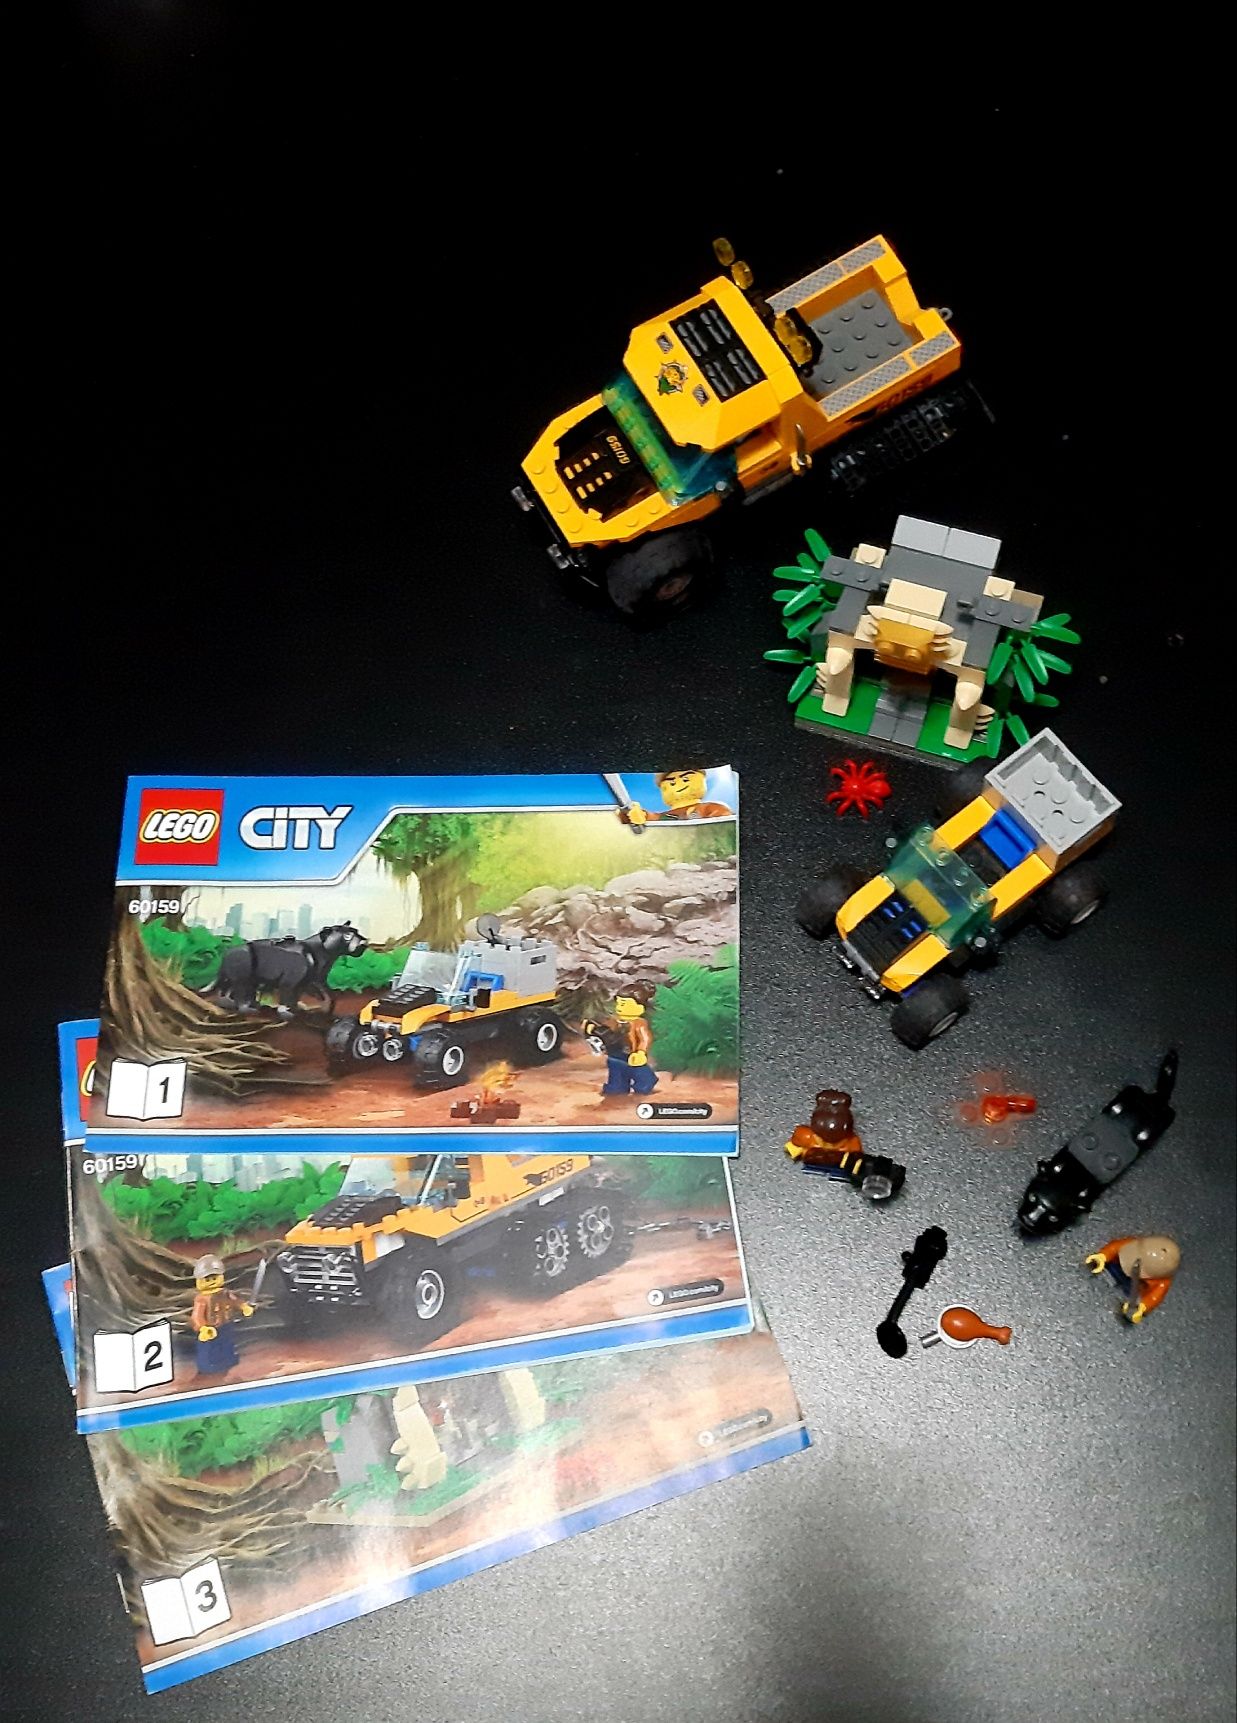 LEGO CITY 60159 Misja Półgąsienicowej Terenówki